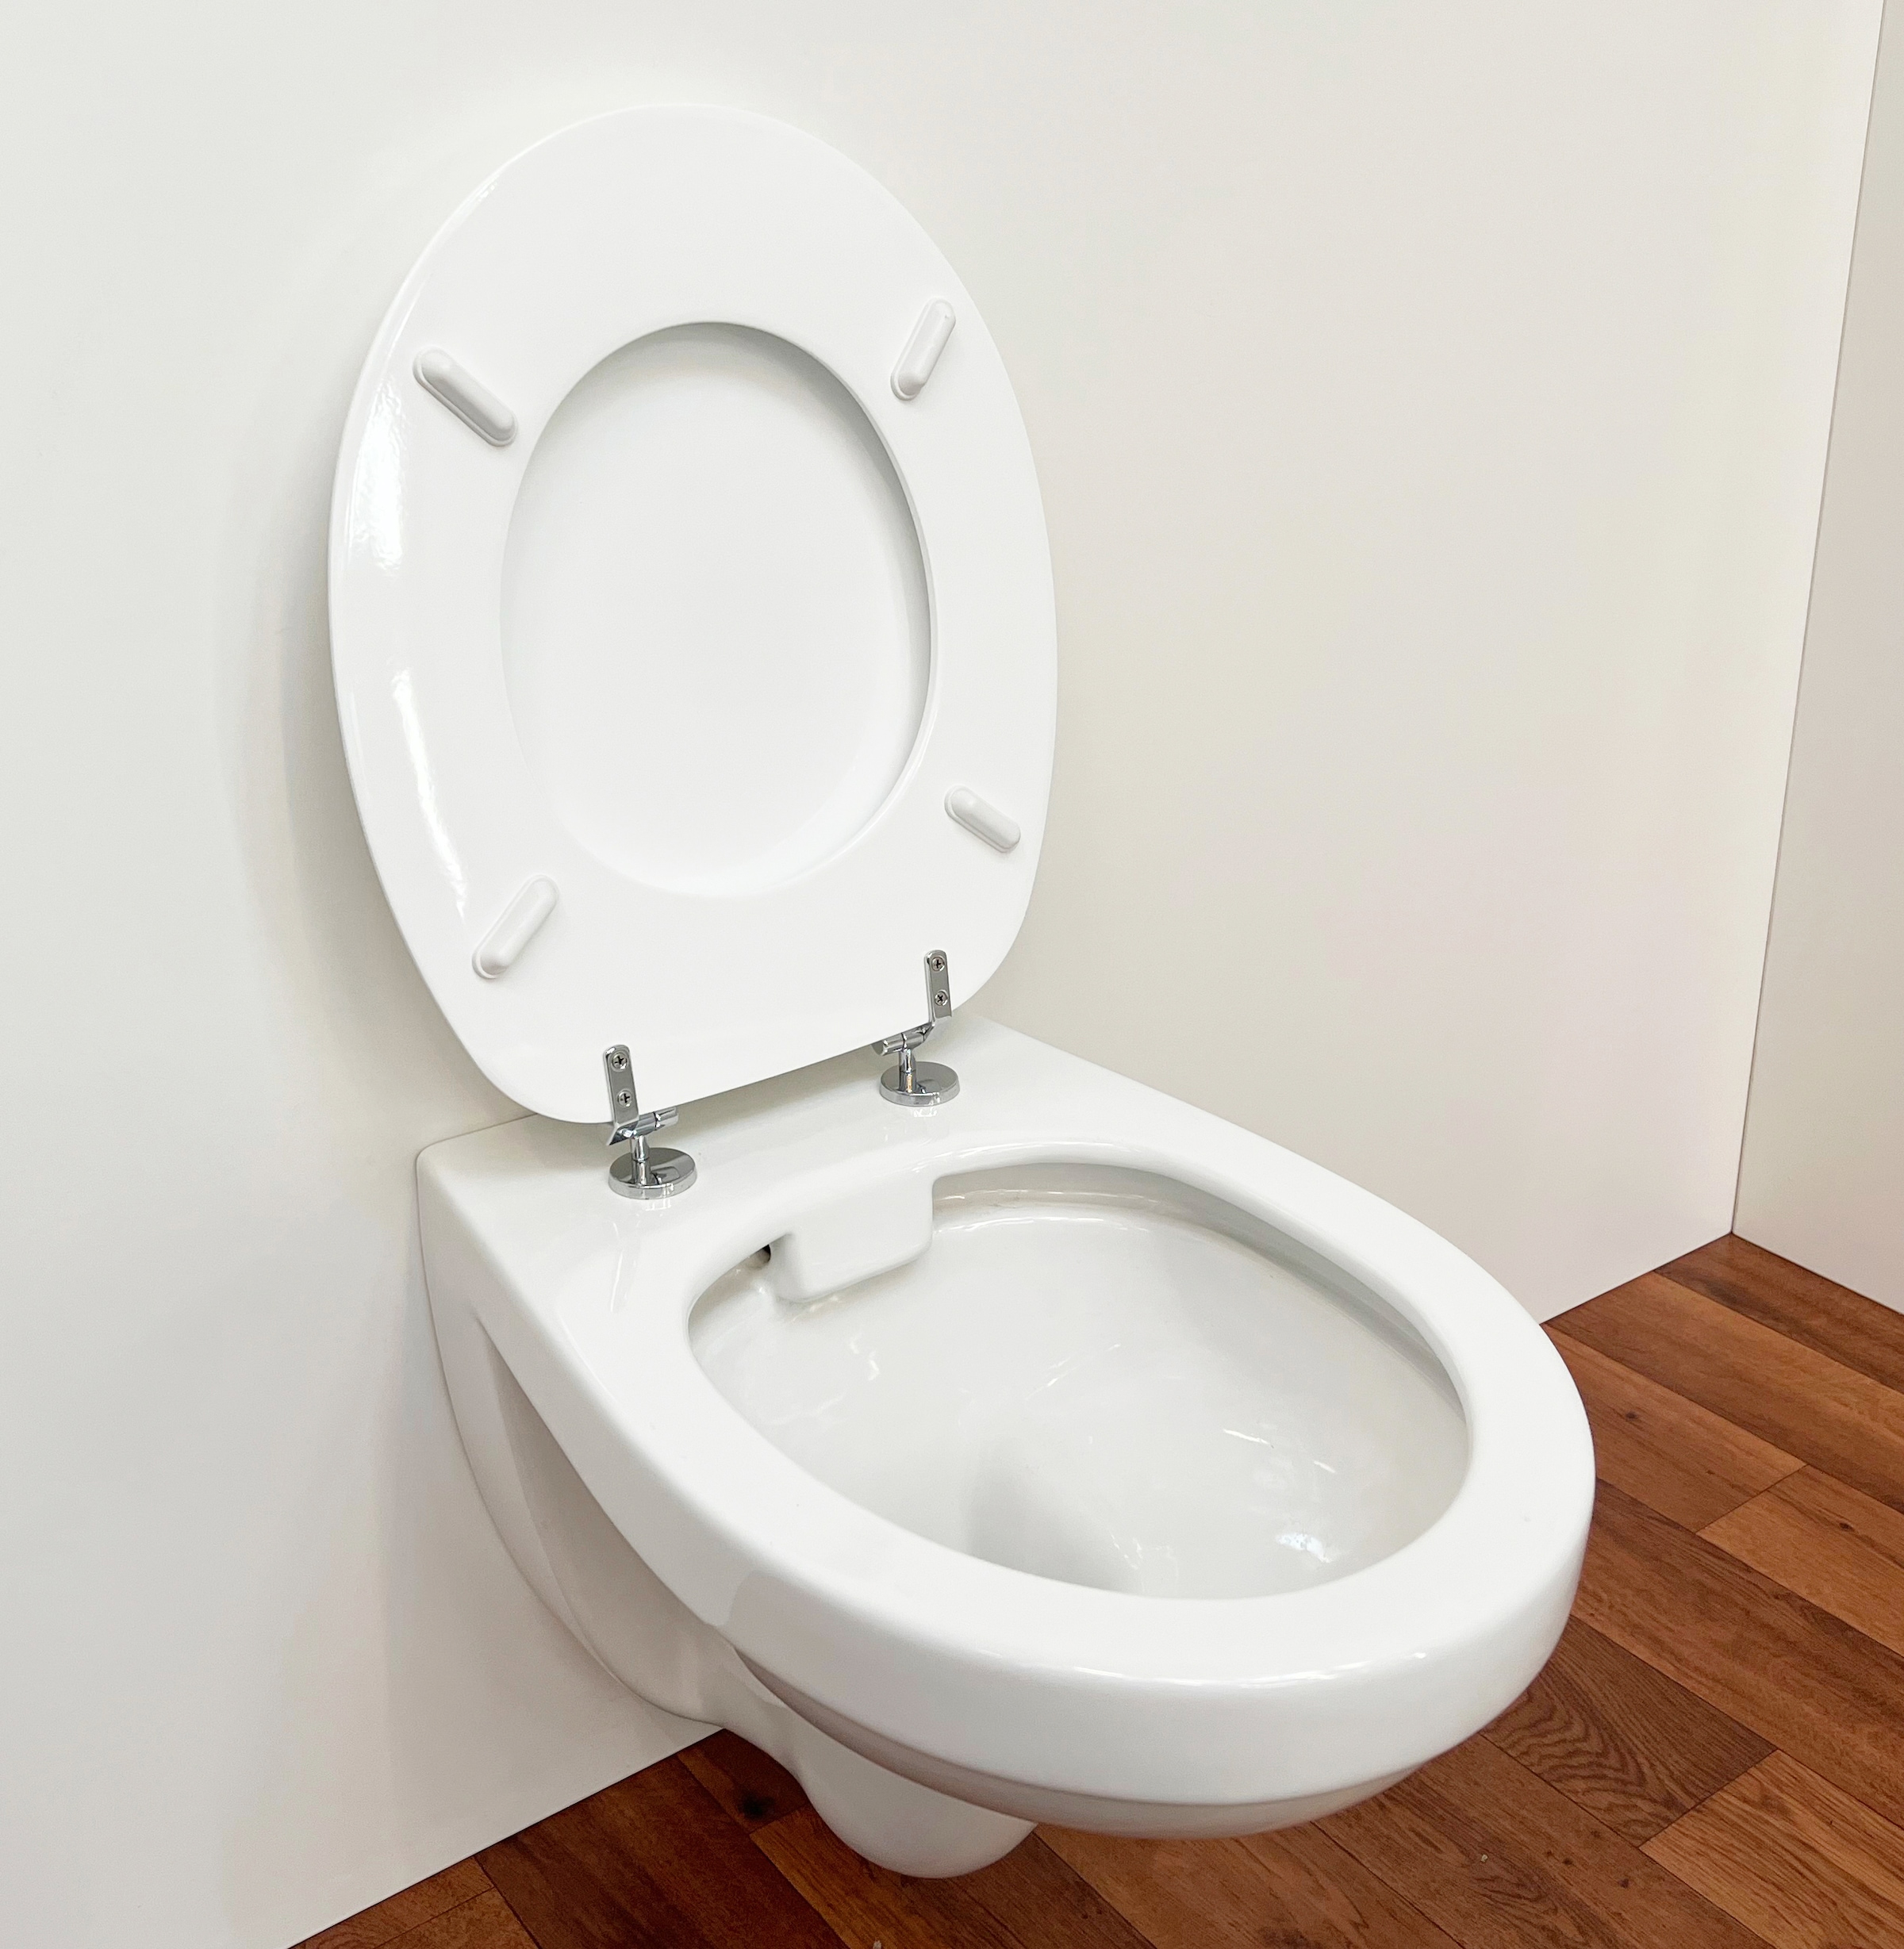 ADOB WC-Sitz, äußerst stabil, Messing verchromte Scharniere